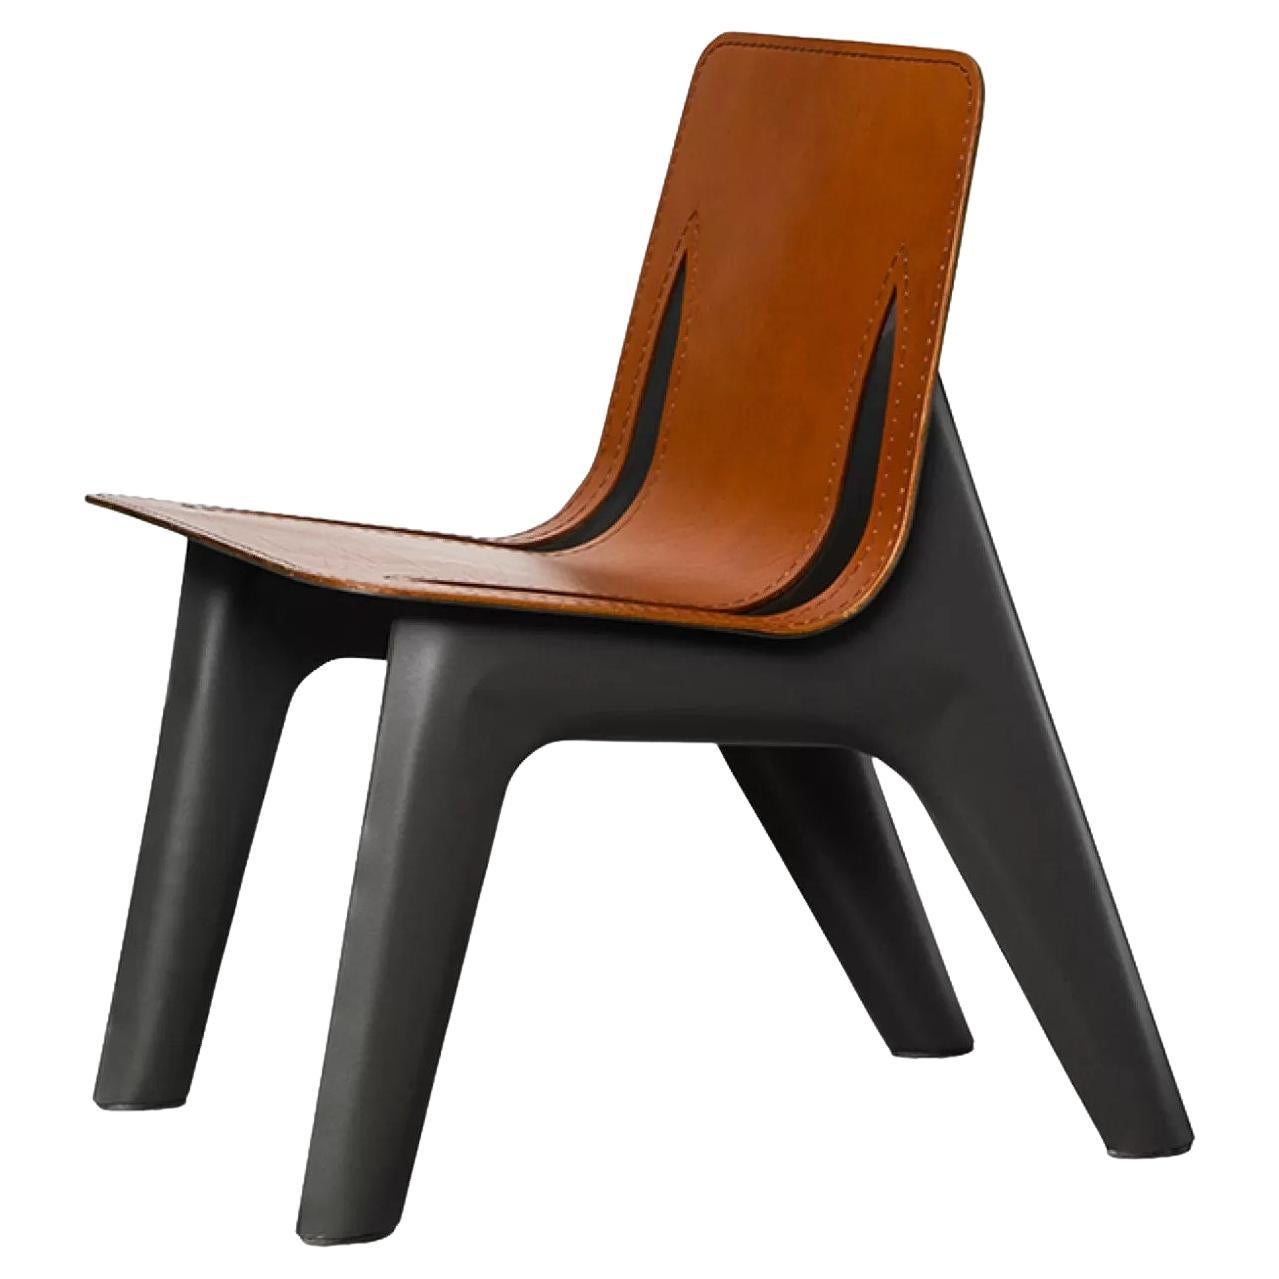 Chaise longue en acier en cuir cognac J-Chair Lounge de Zieta